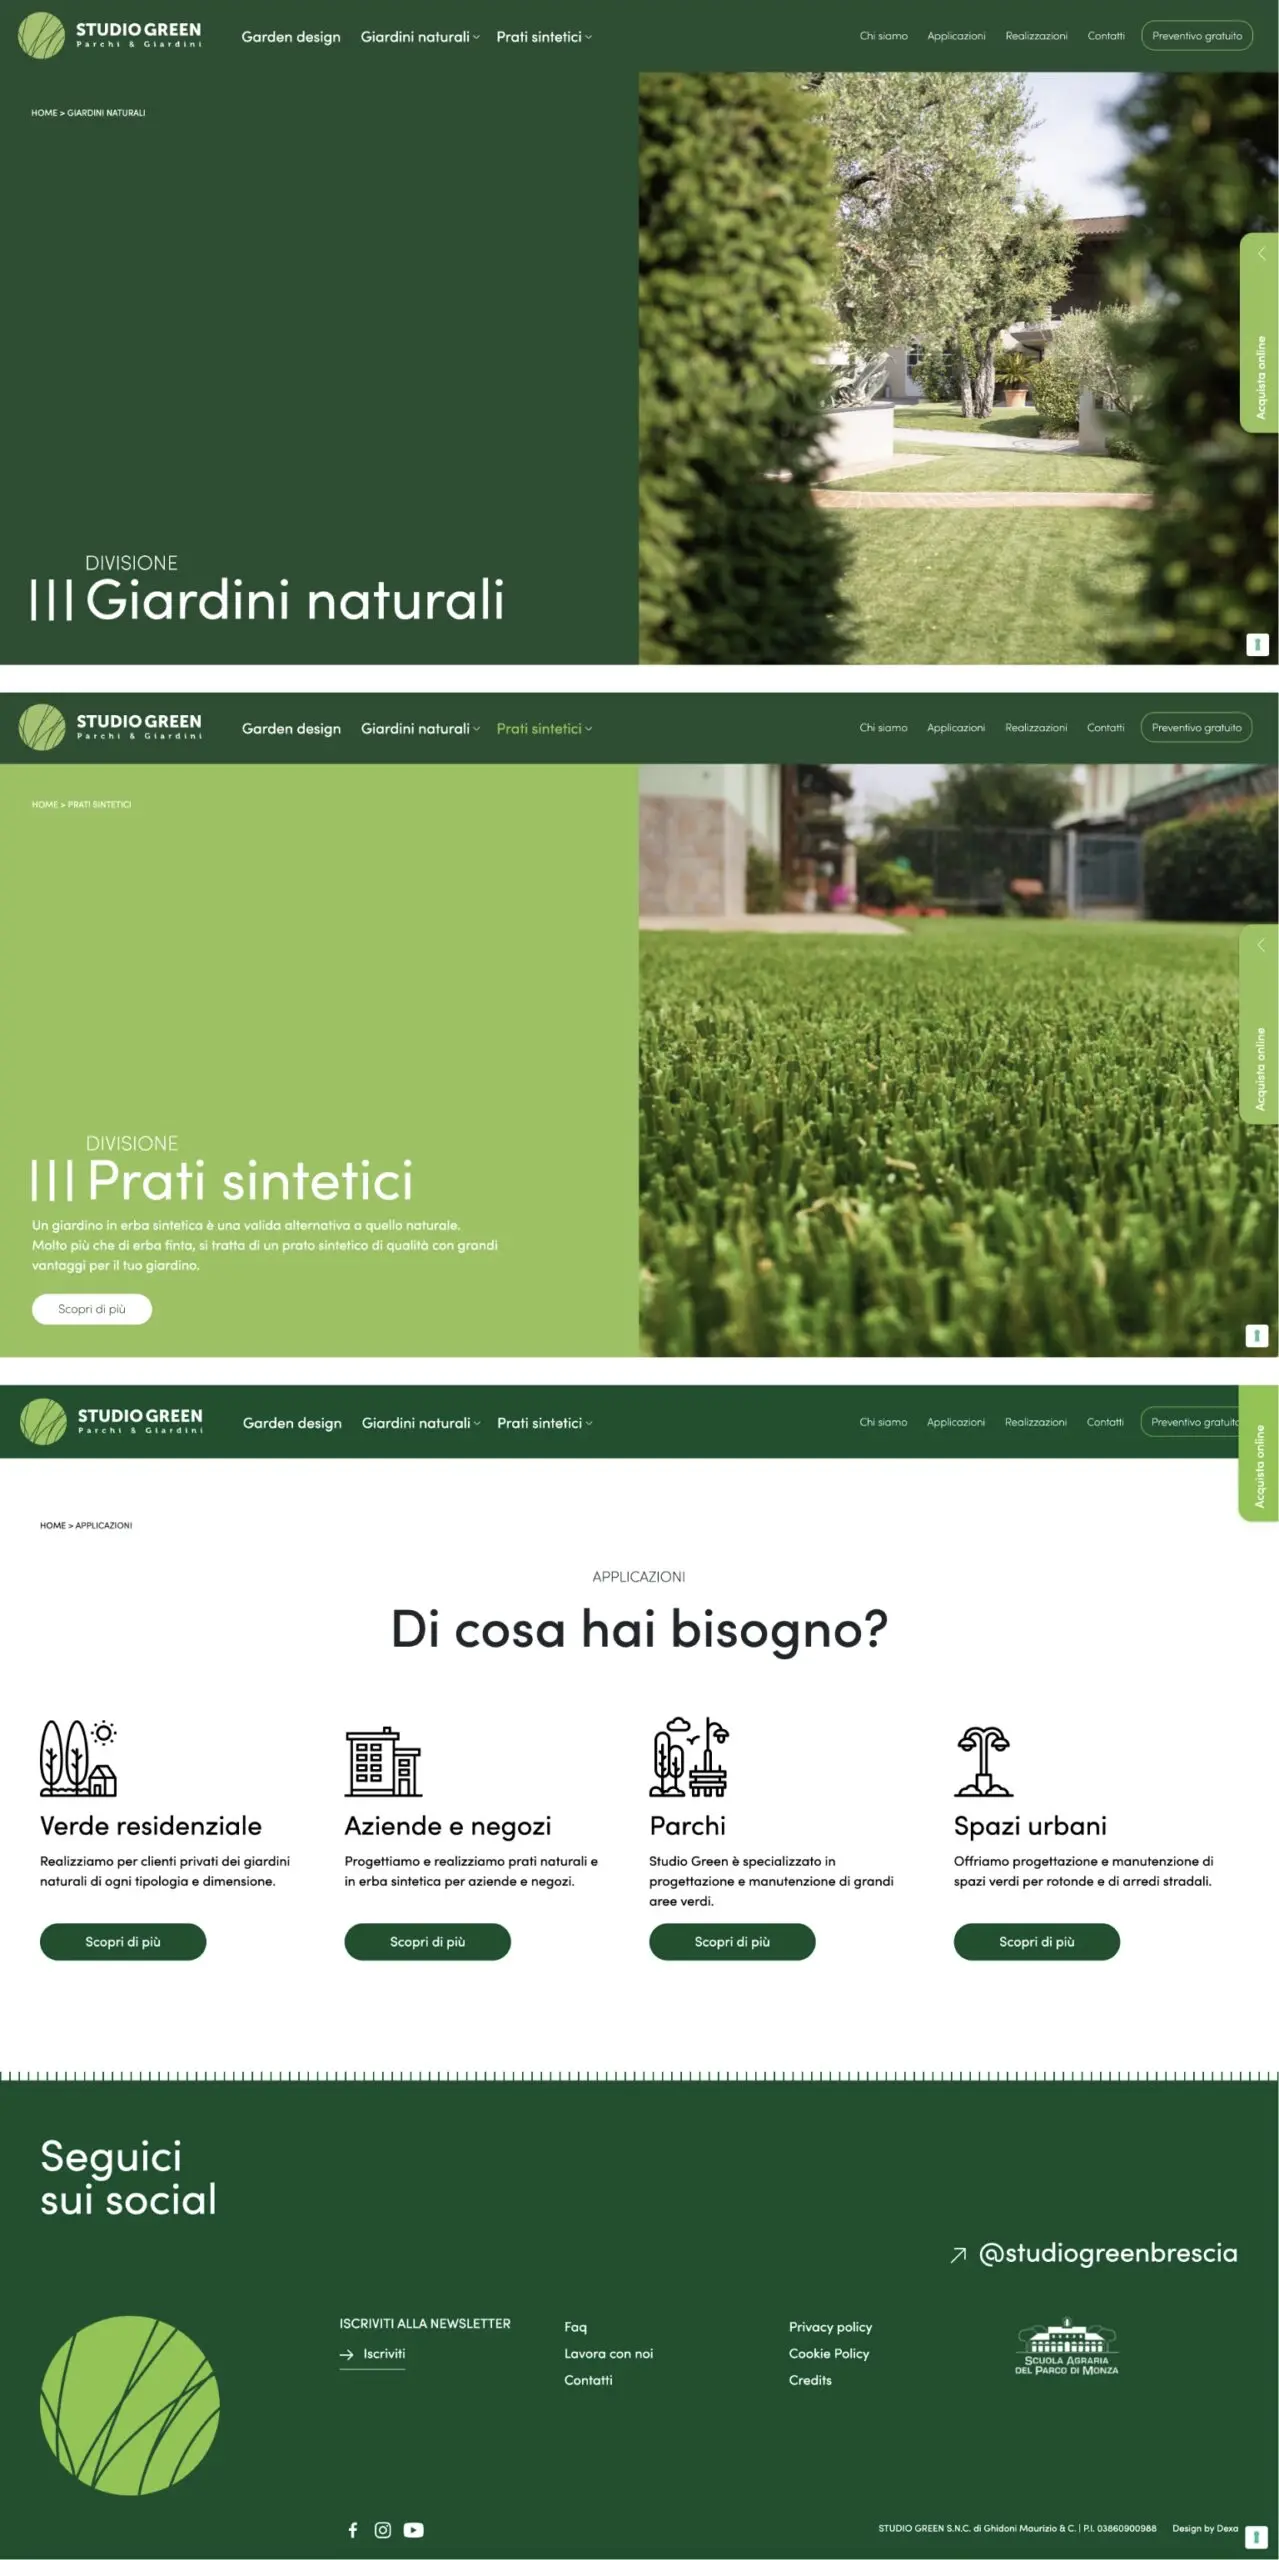 Dexa agency: mockup i giardini sito web desktop Studio Green